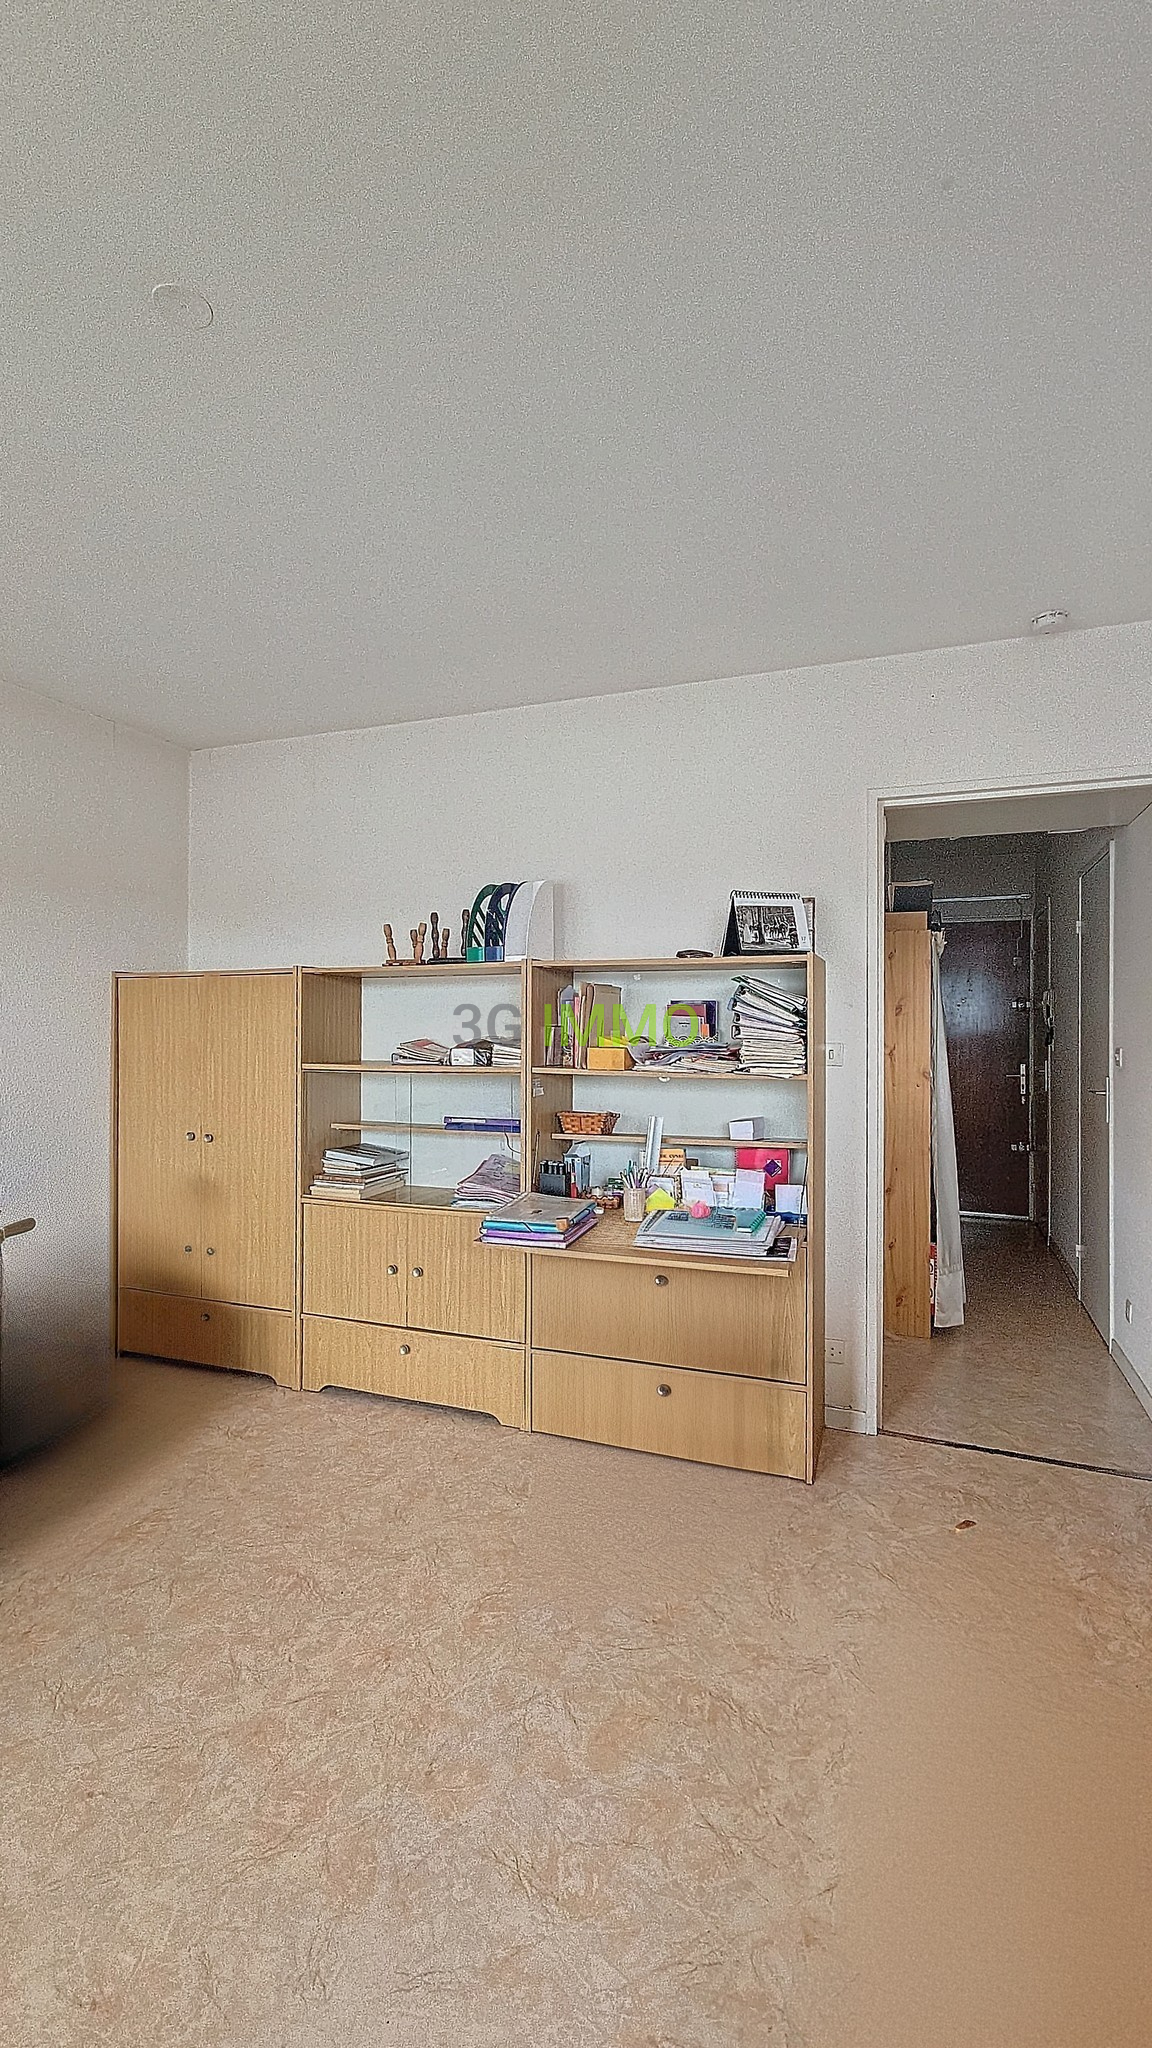 Photo 4 | Cusset (03300) | Appartement de 29.00 m² | Type 1 | 42000 € |  Référence: 191444VP